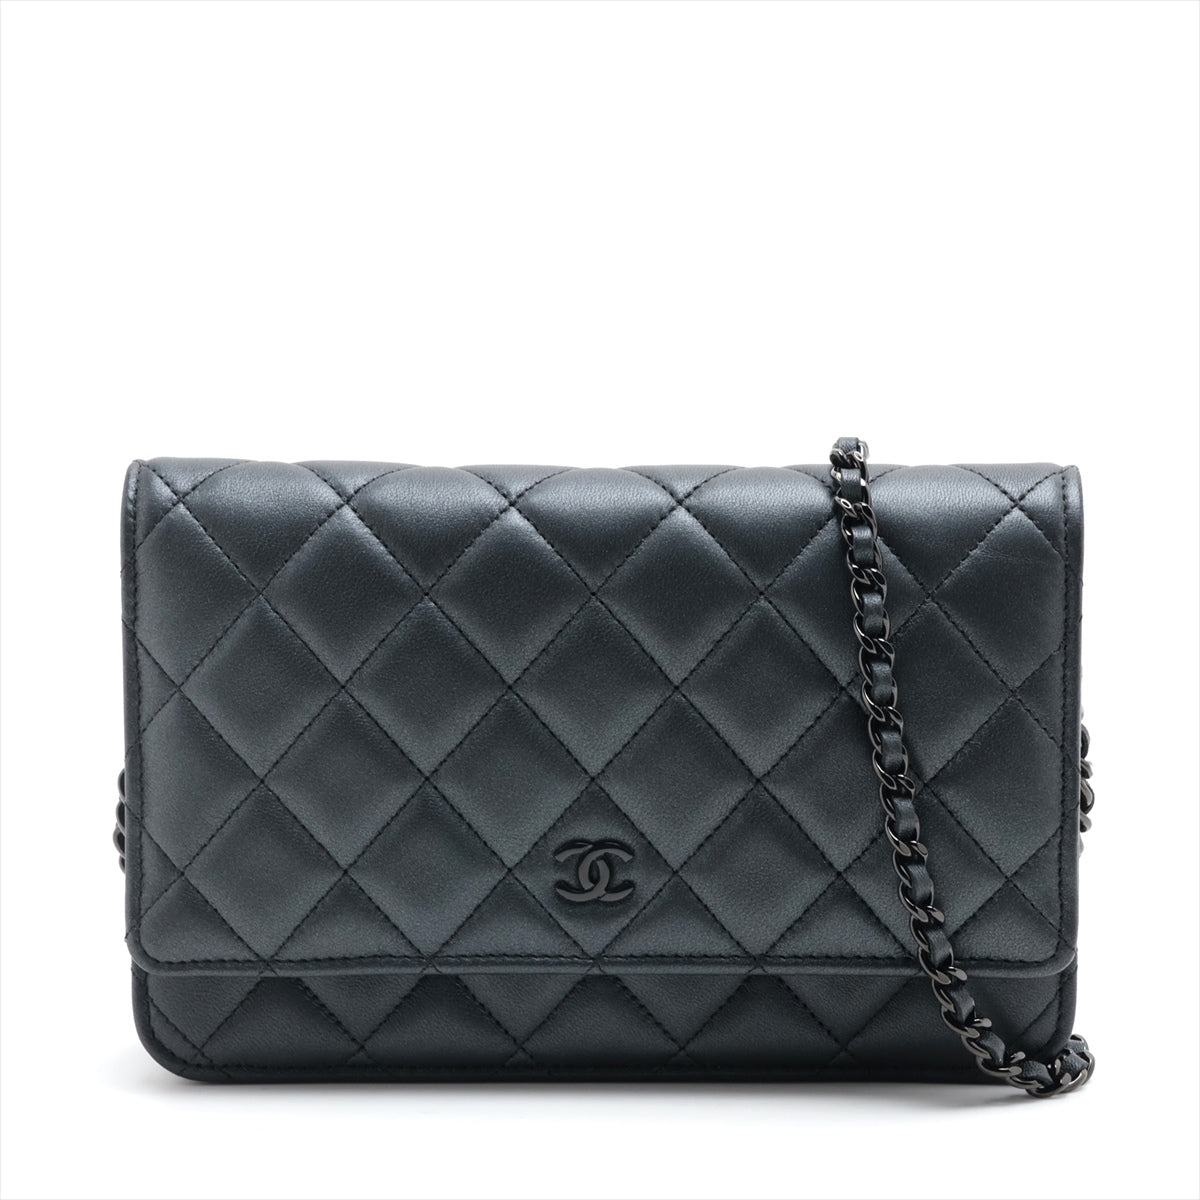 Chanel Matelasse Lambskin Chain Wallet Grey Black Metal Fittings